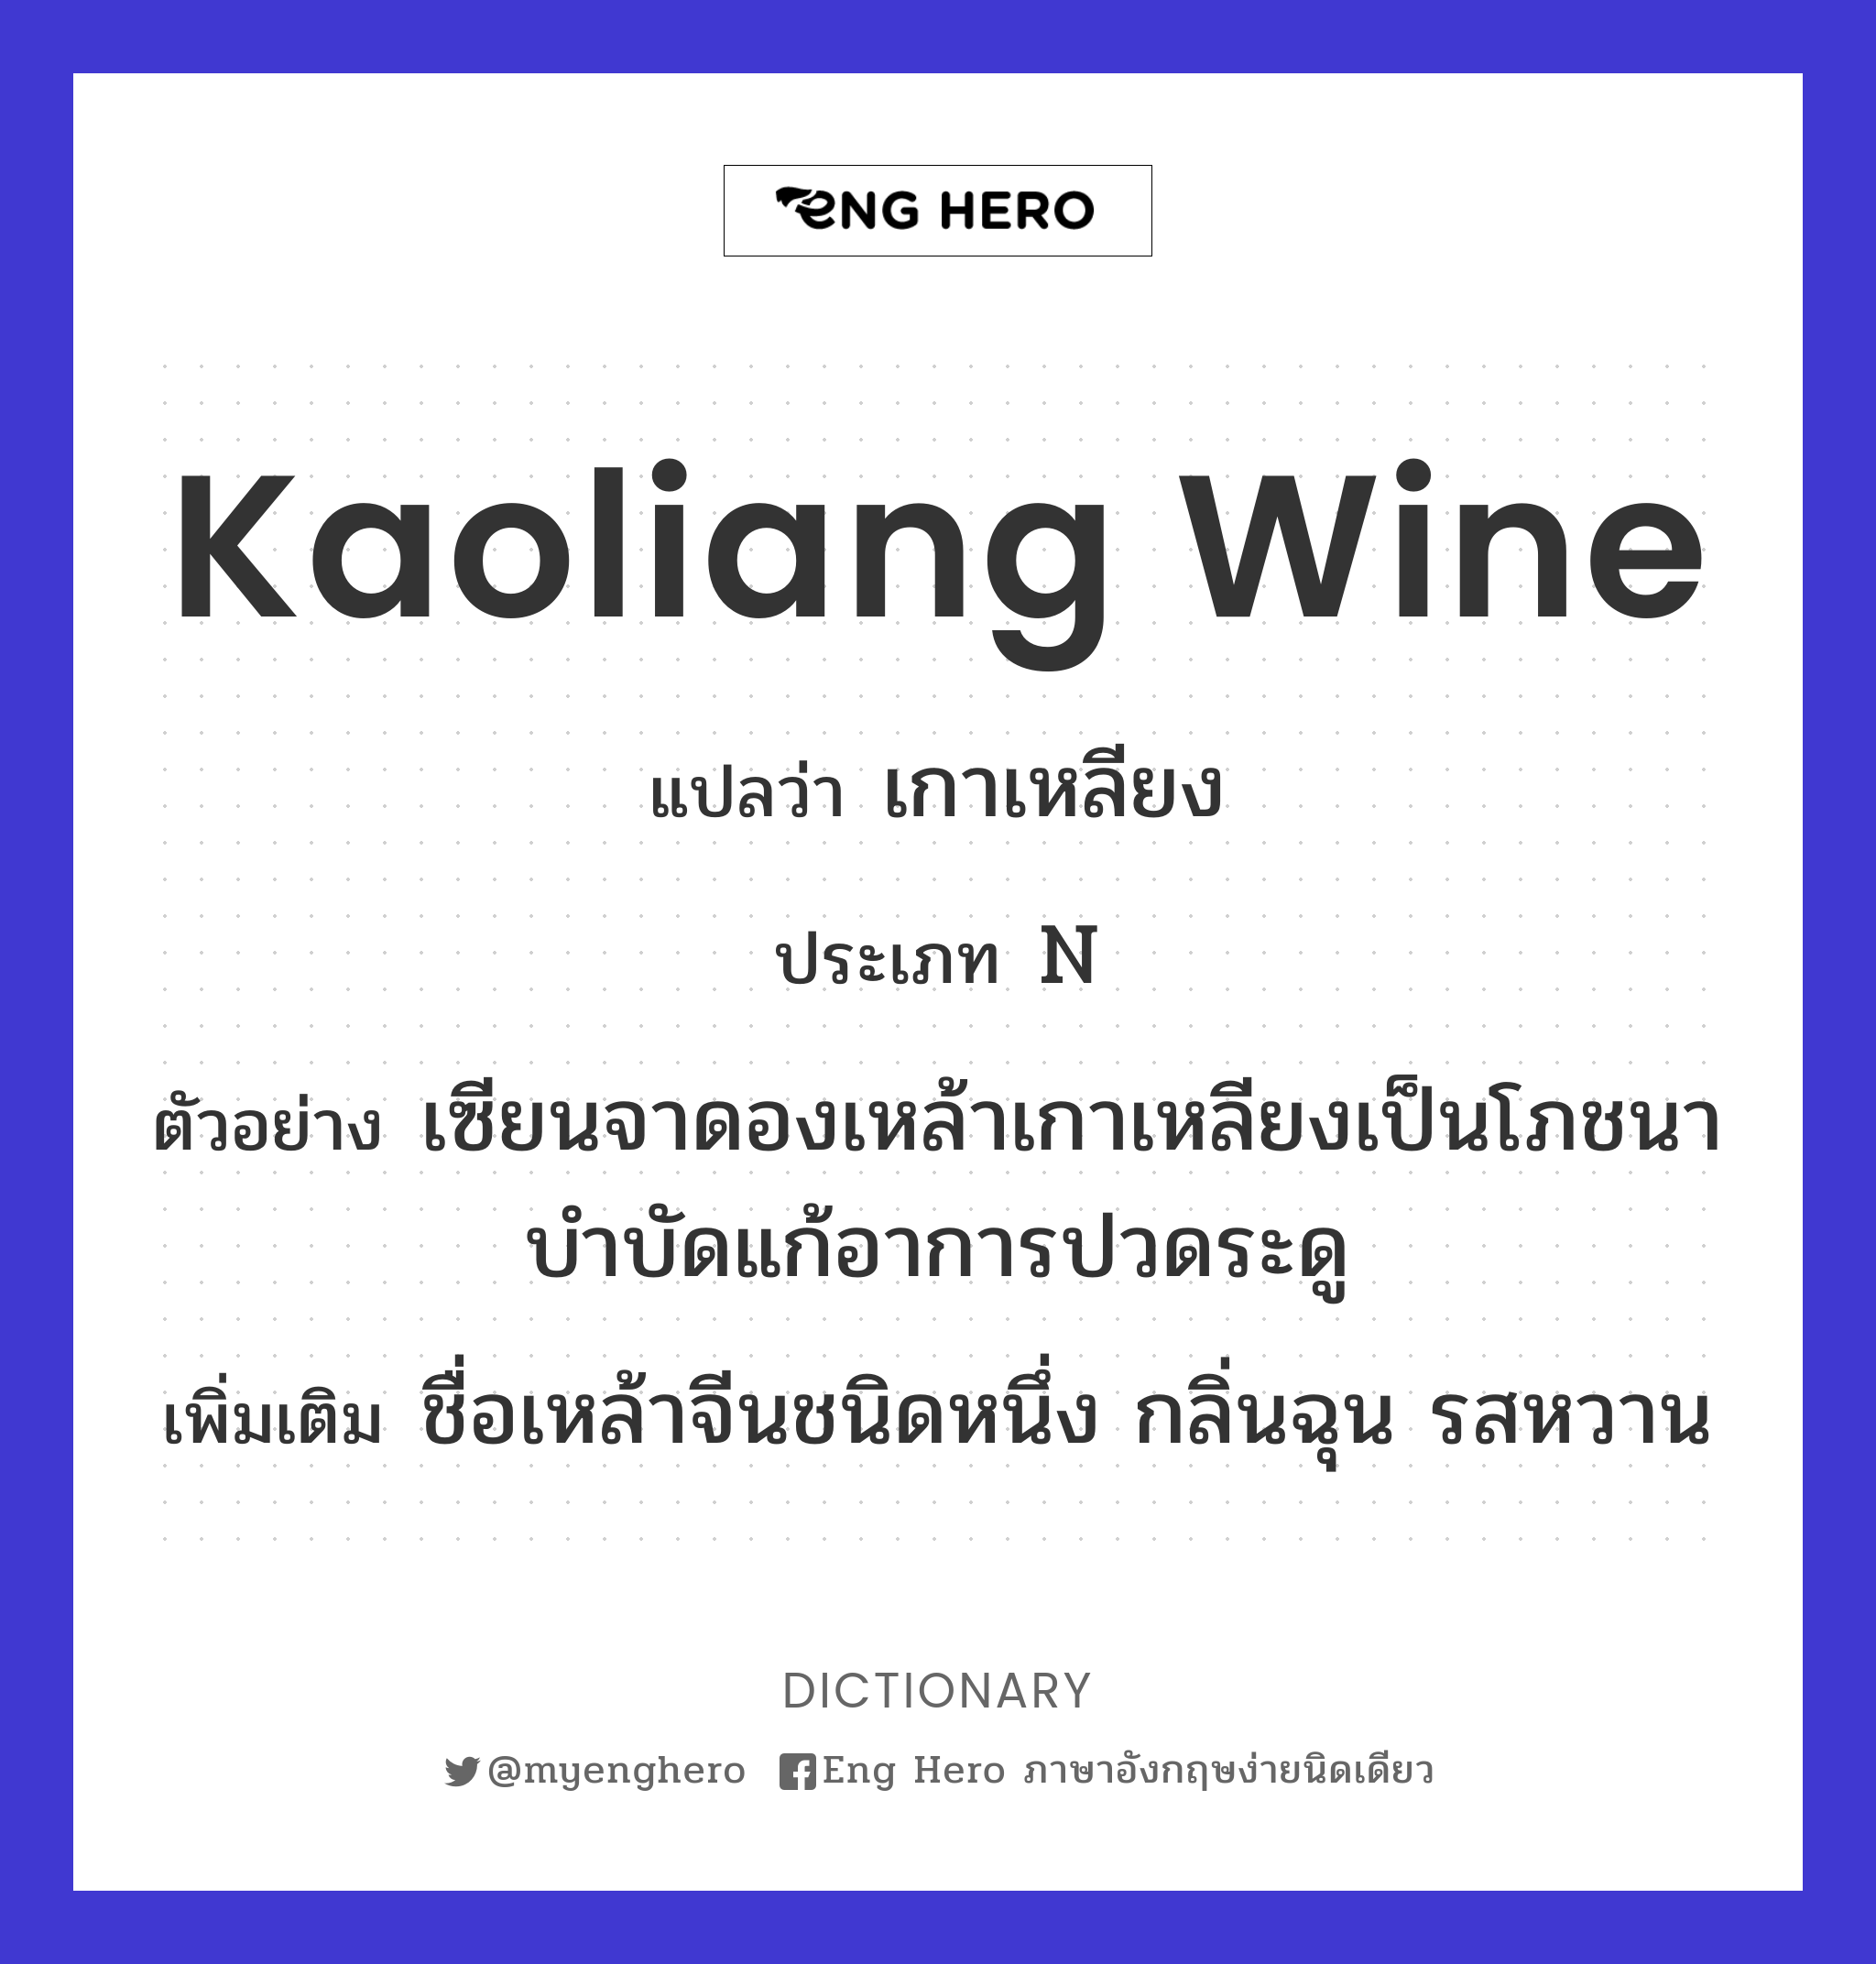 Kaoliang wine